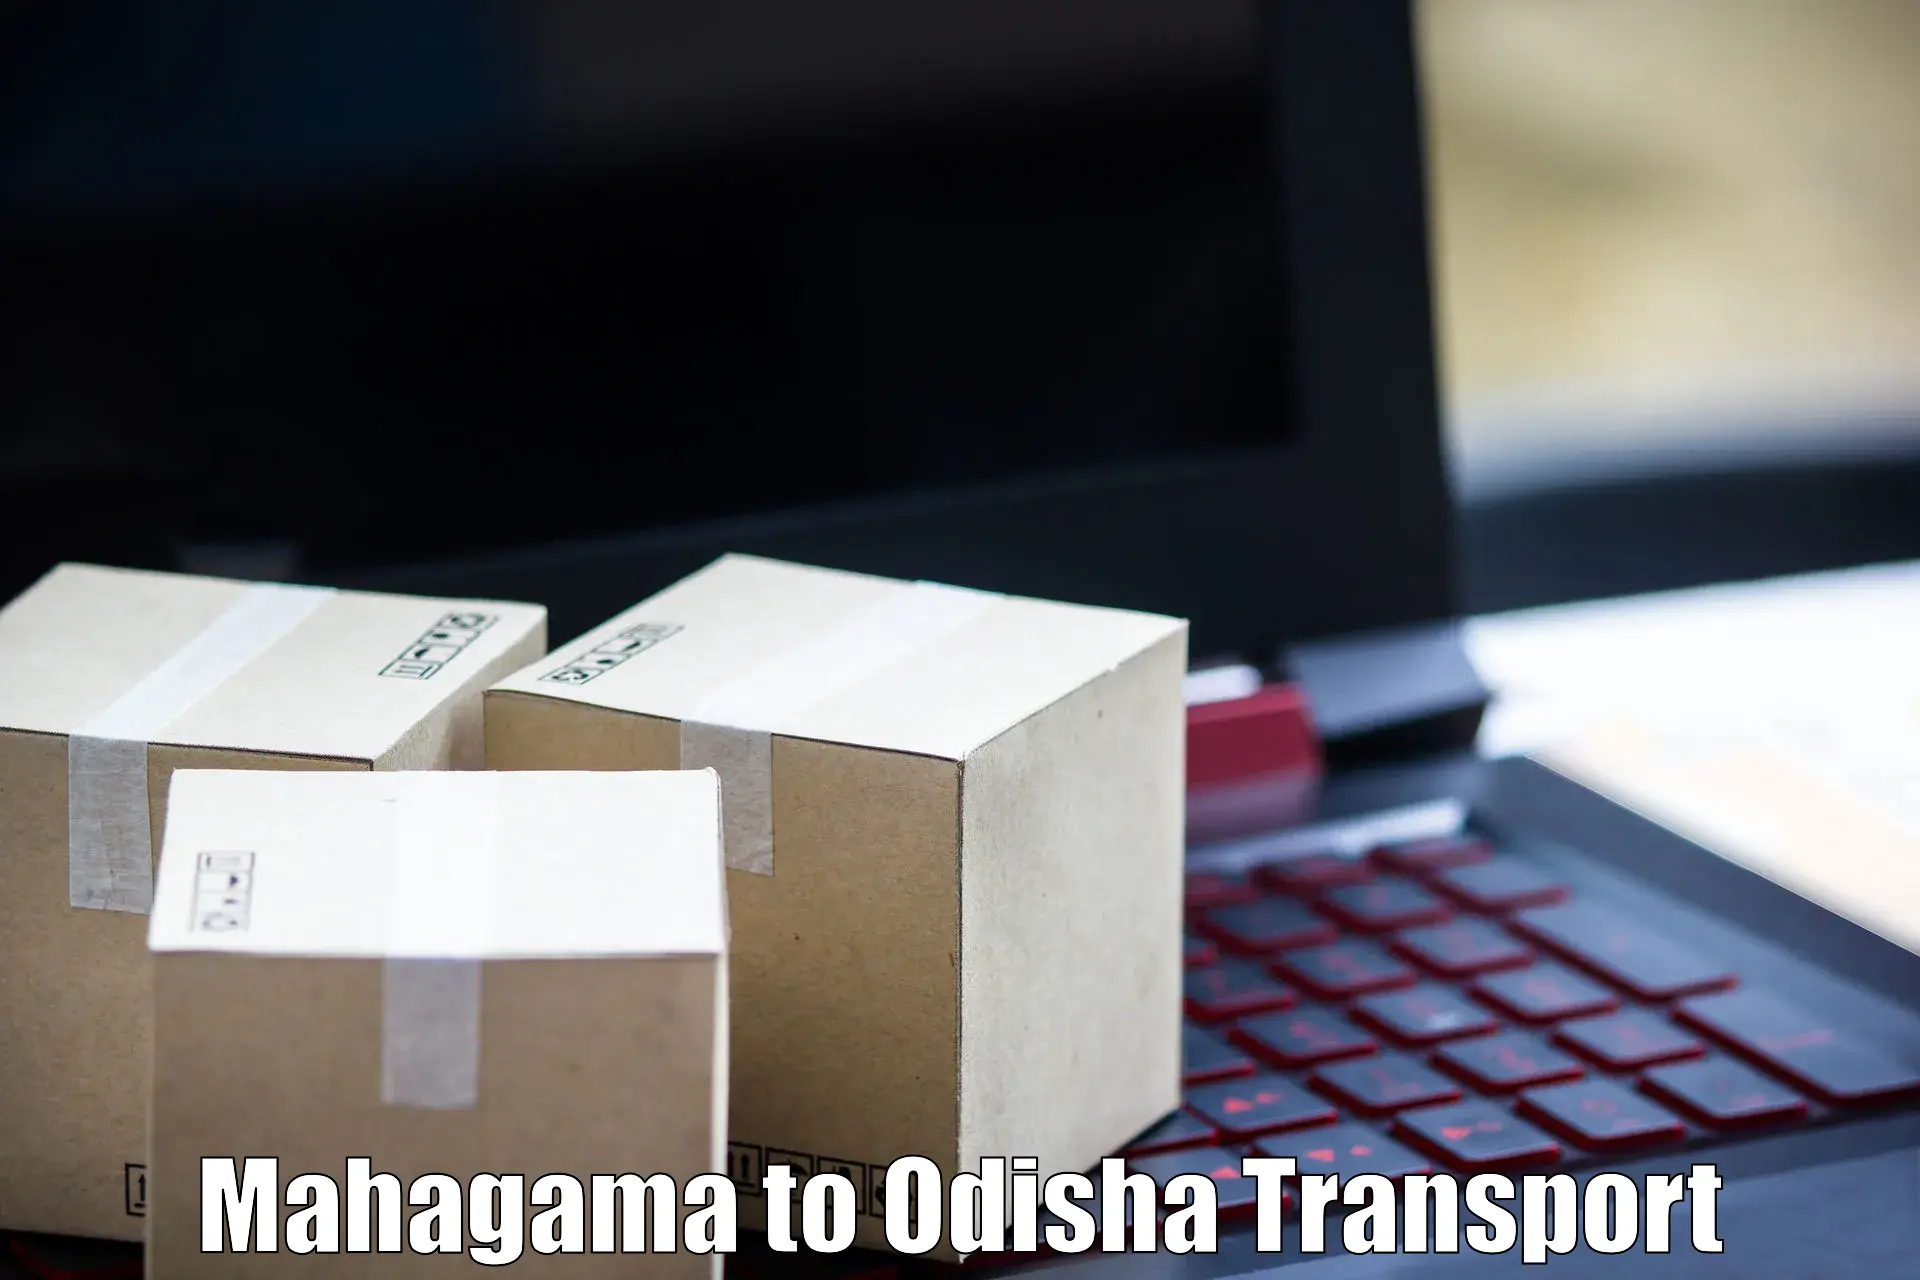 Shipping services Mahagama to Badamba